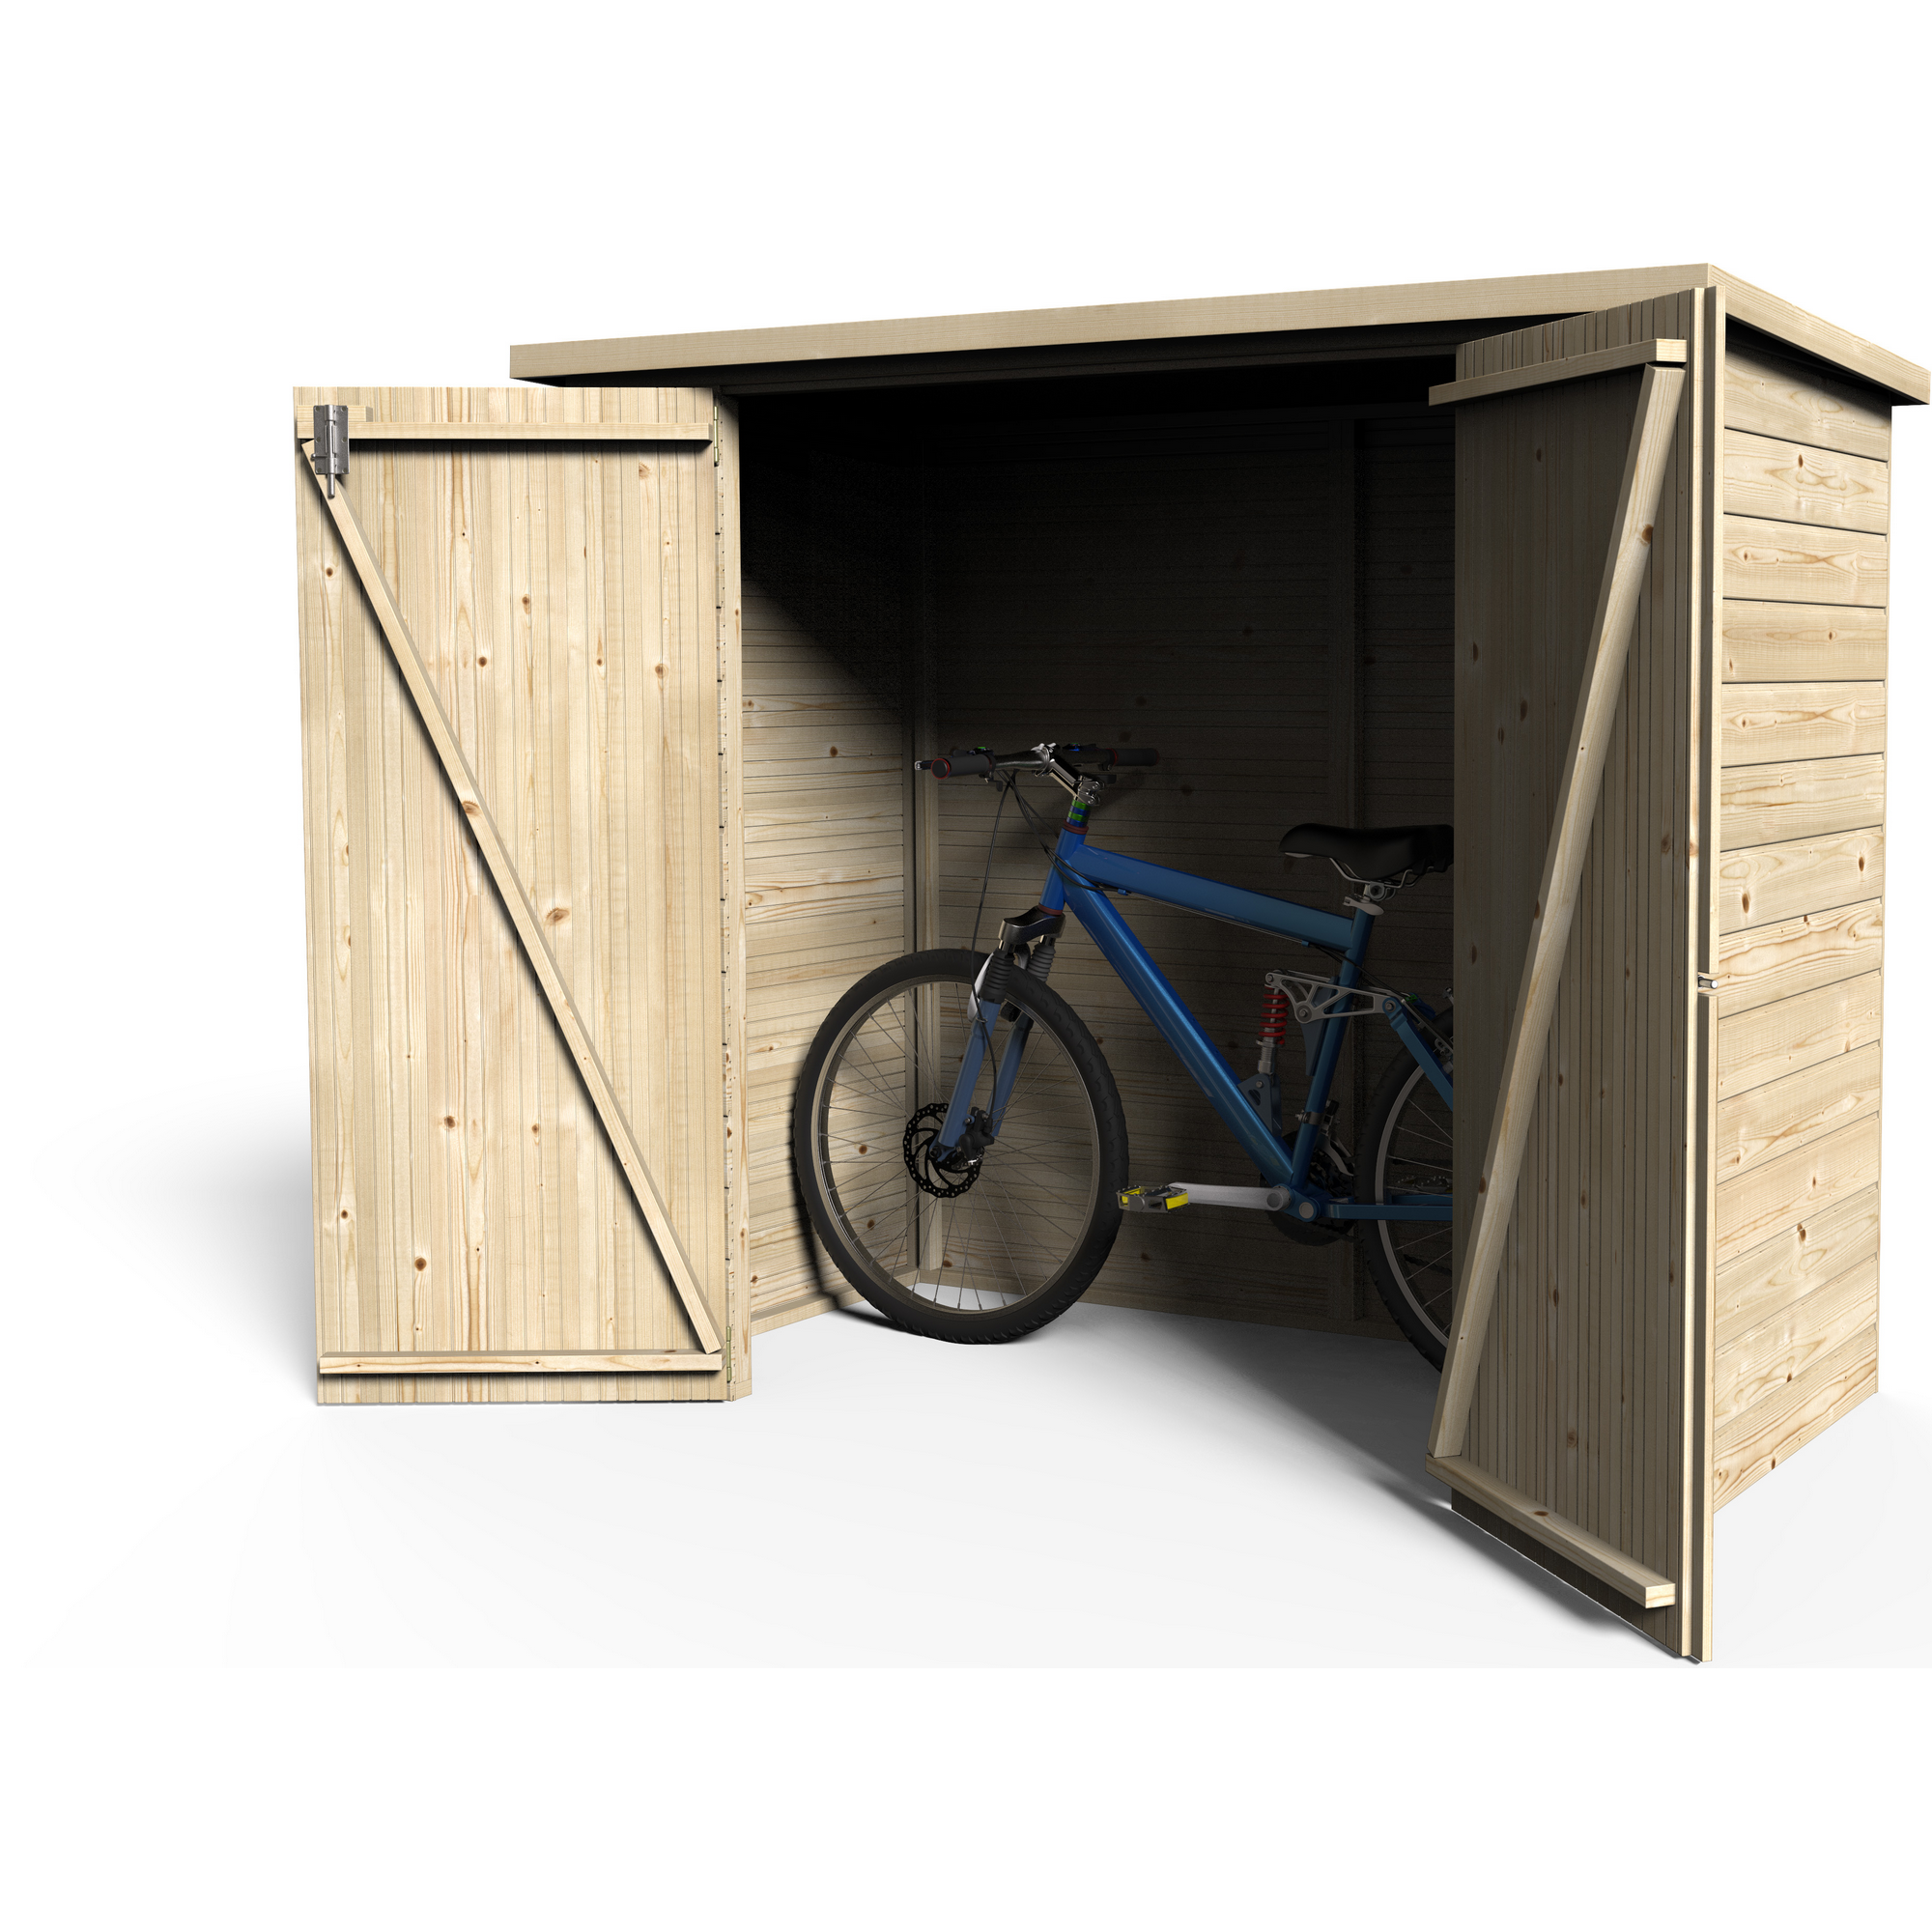 Fahrradgarage 'Bike-Box' Fichtenholz naturbelassen 182 x 88 cm + product picture